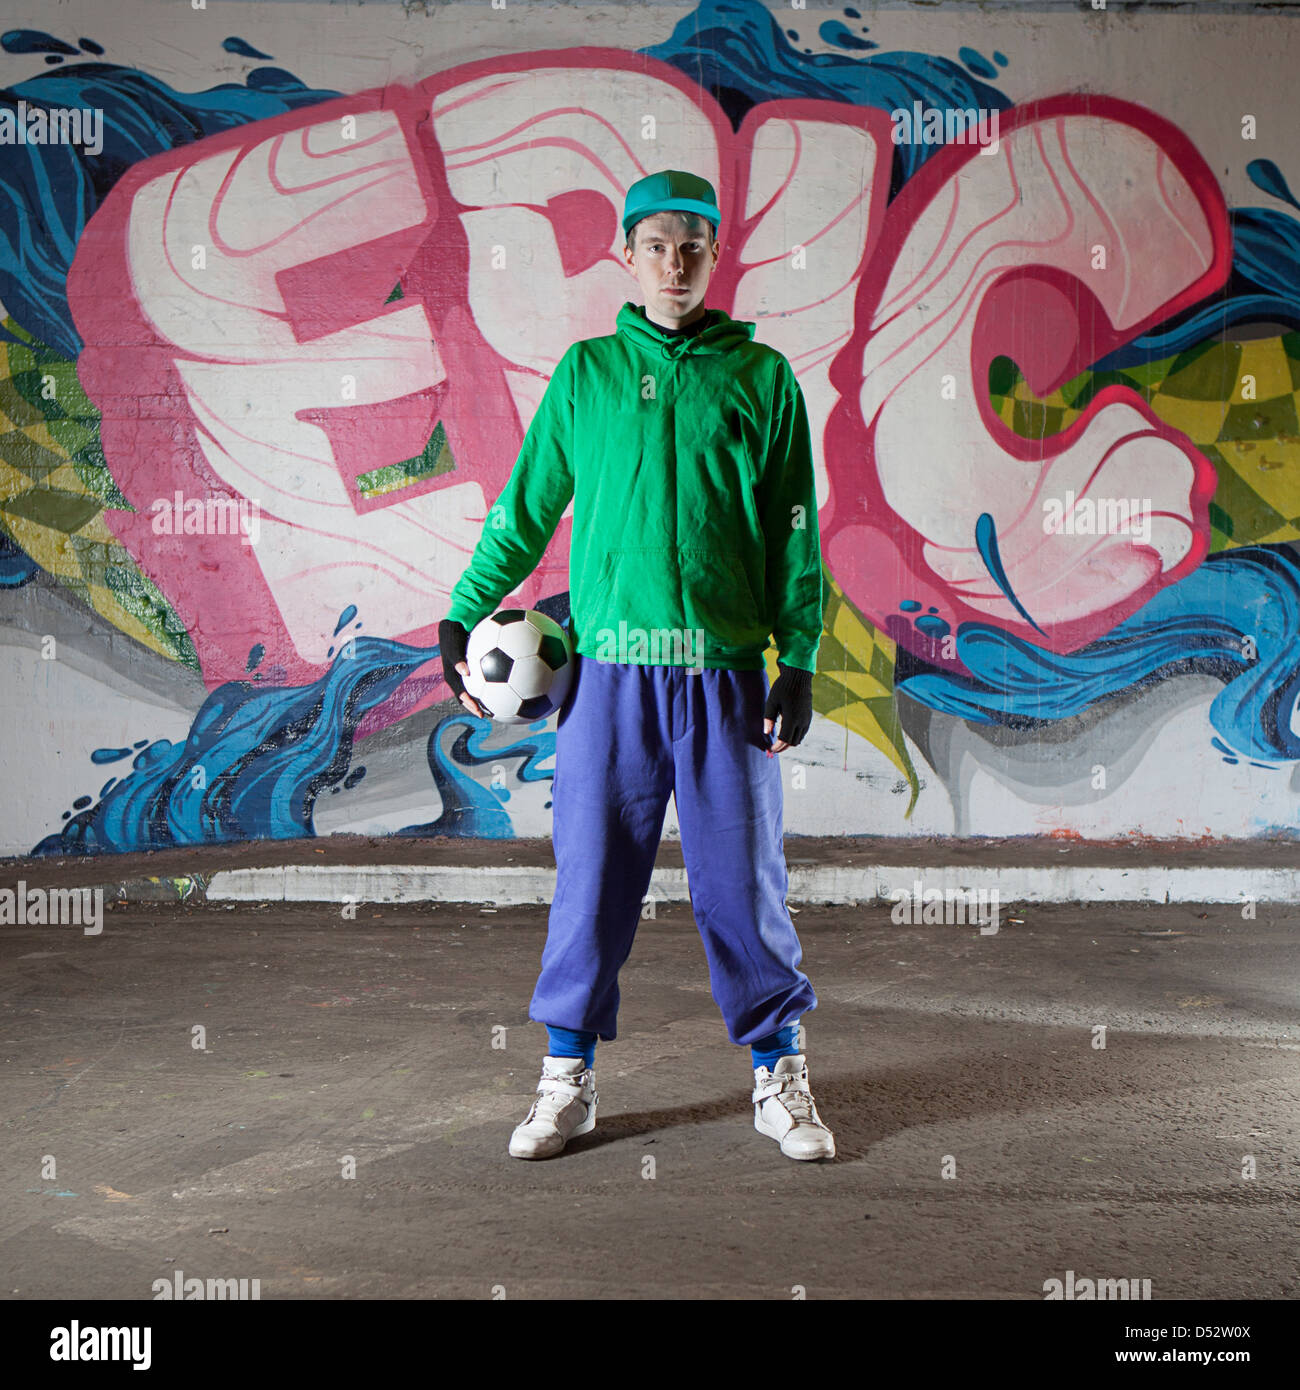 An urban footballer in his native environment Stock Photo